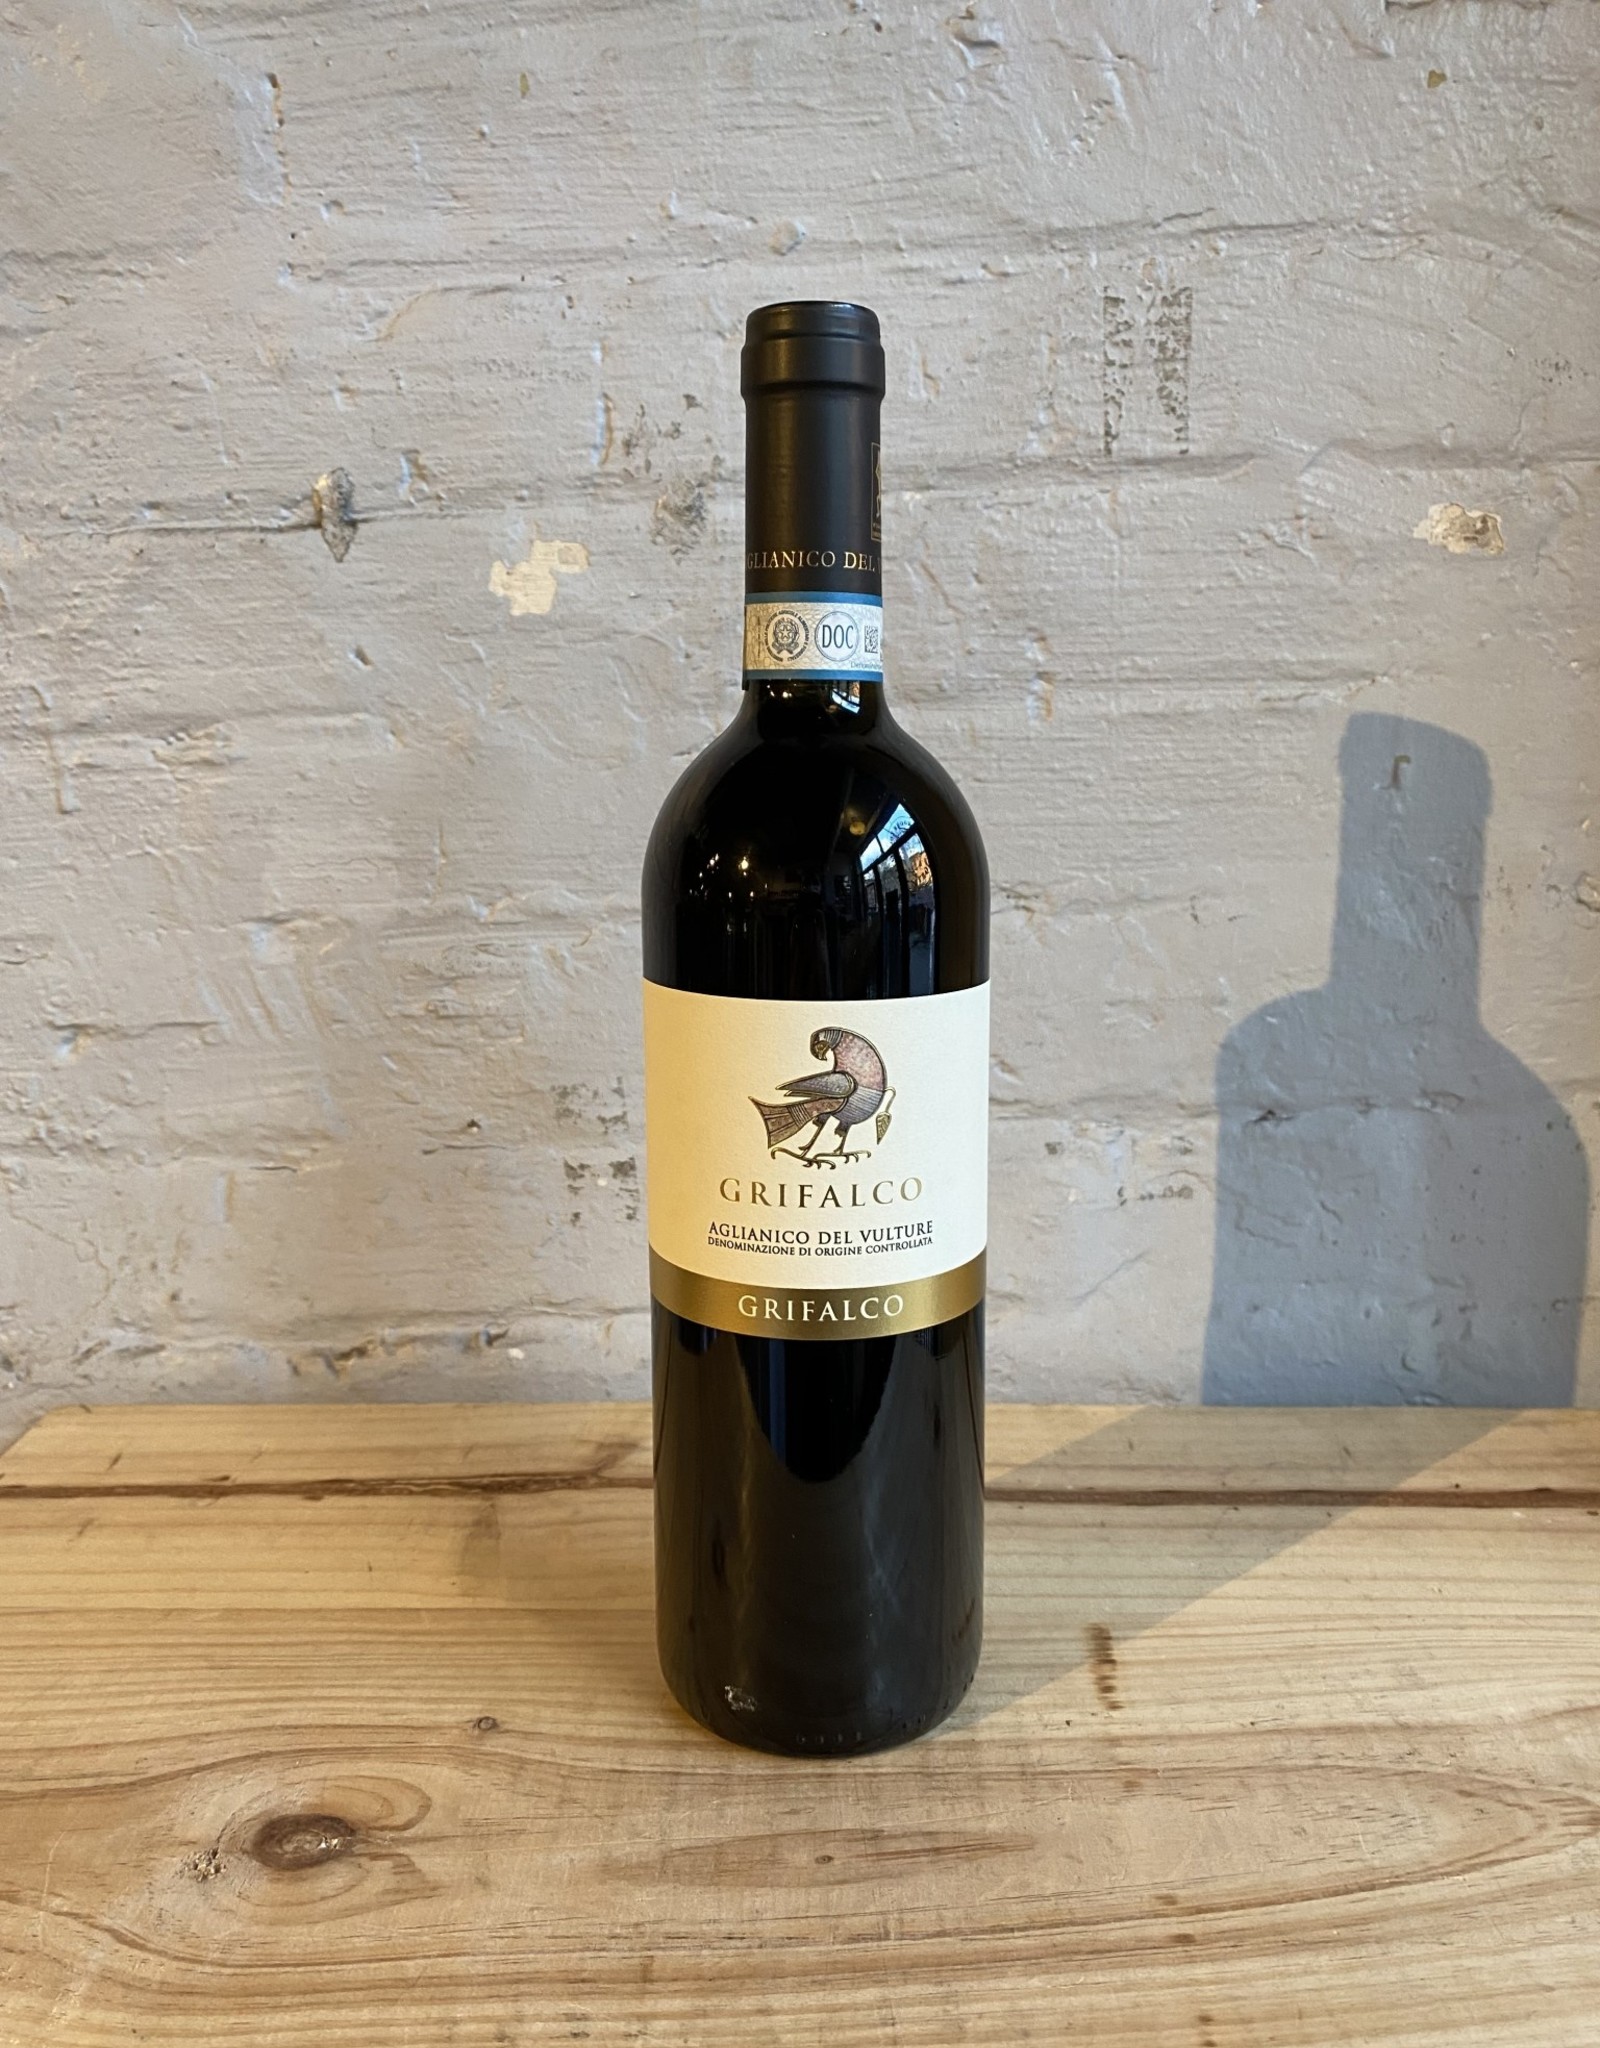 Wine 2019 Grifalco 'Grifalco' Aglianico del Vulture - Basilicata, Italy (750ml)